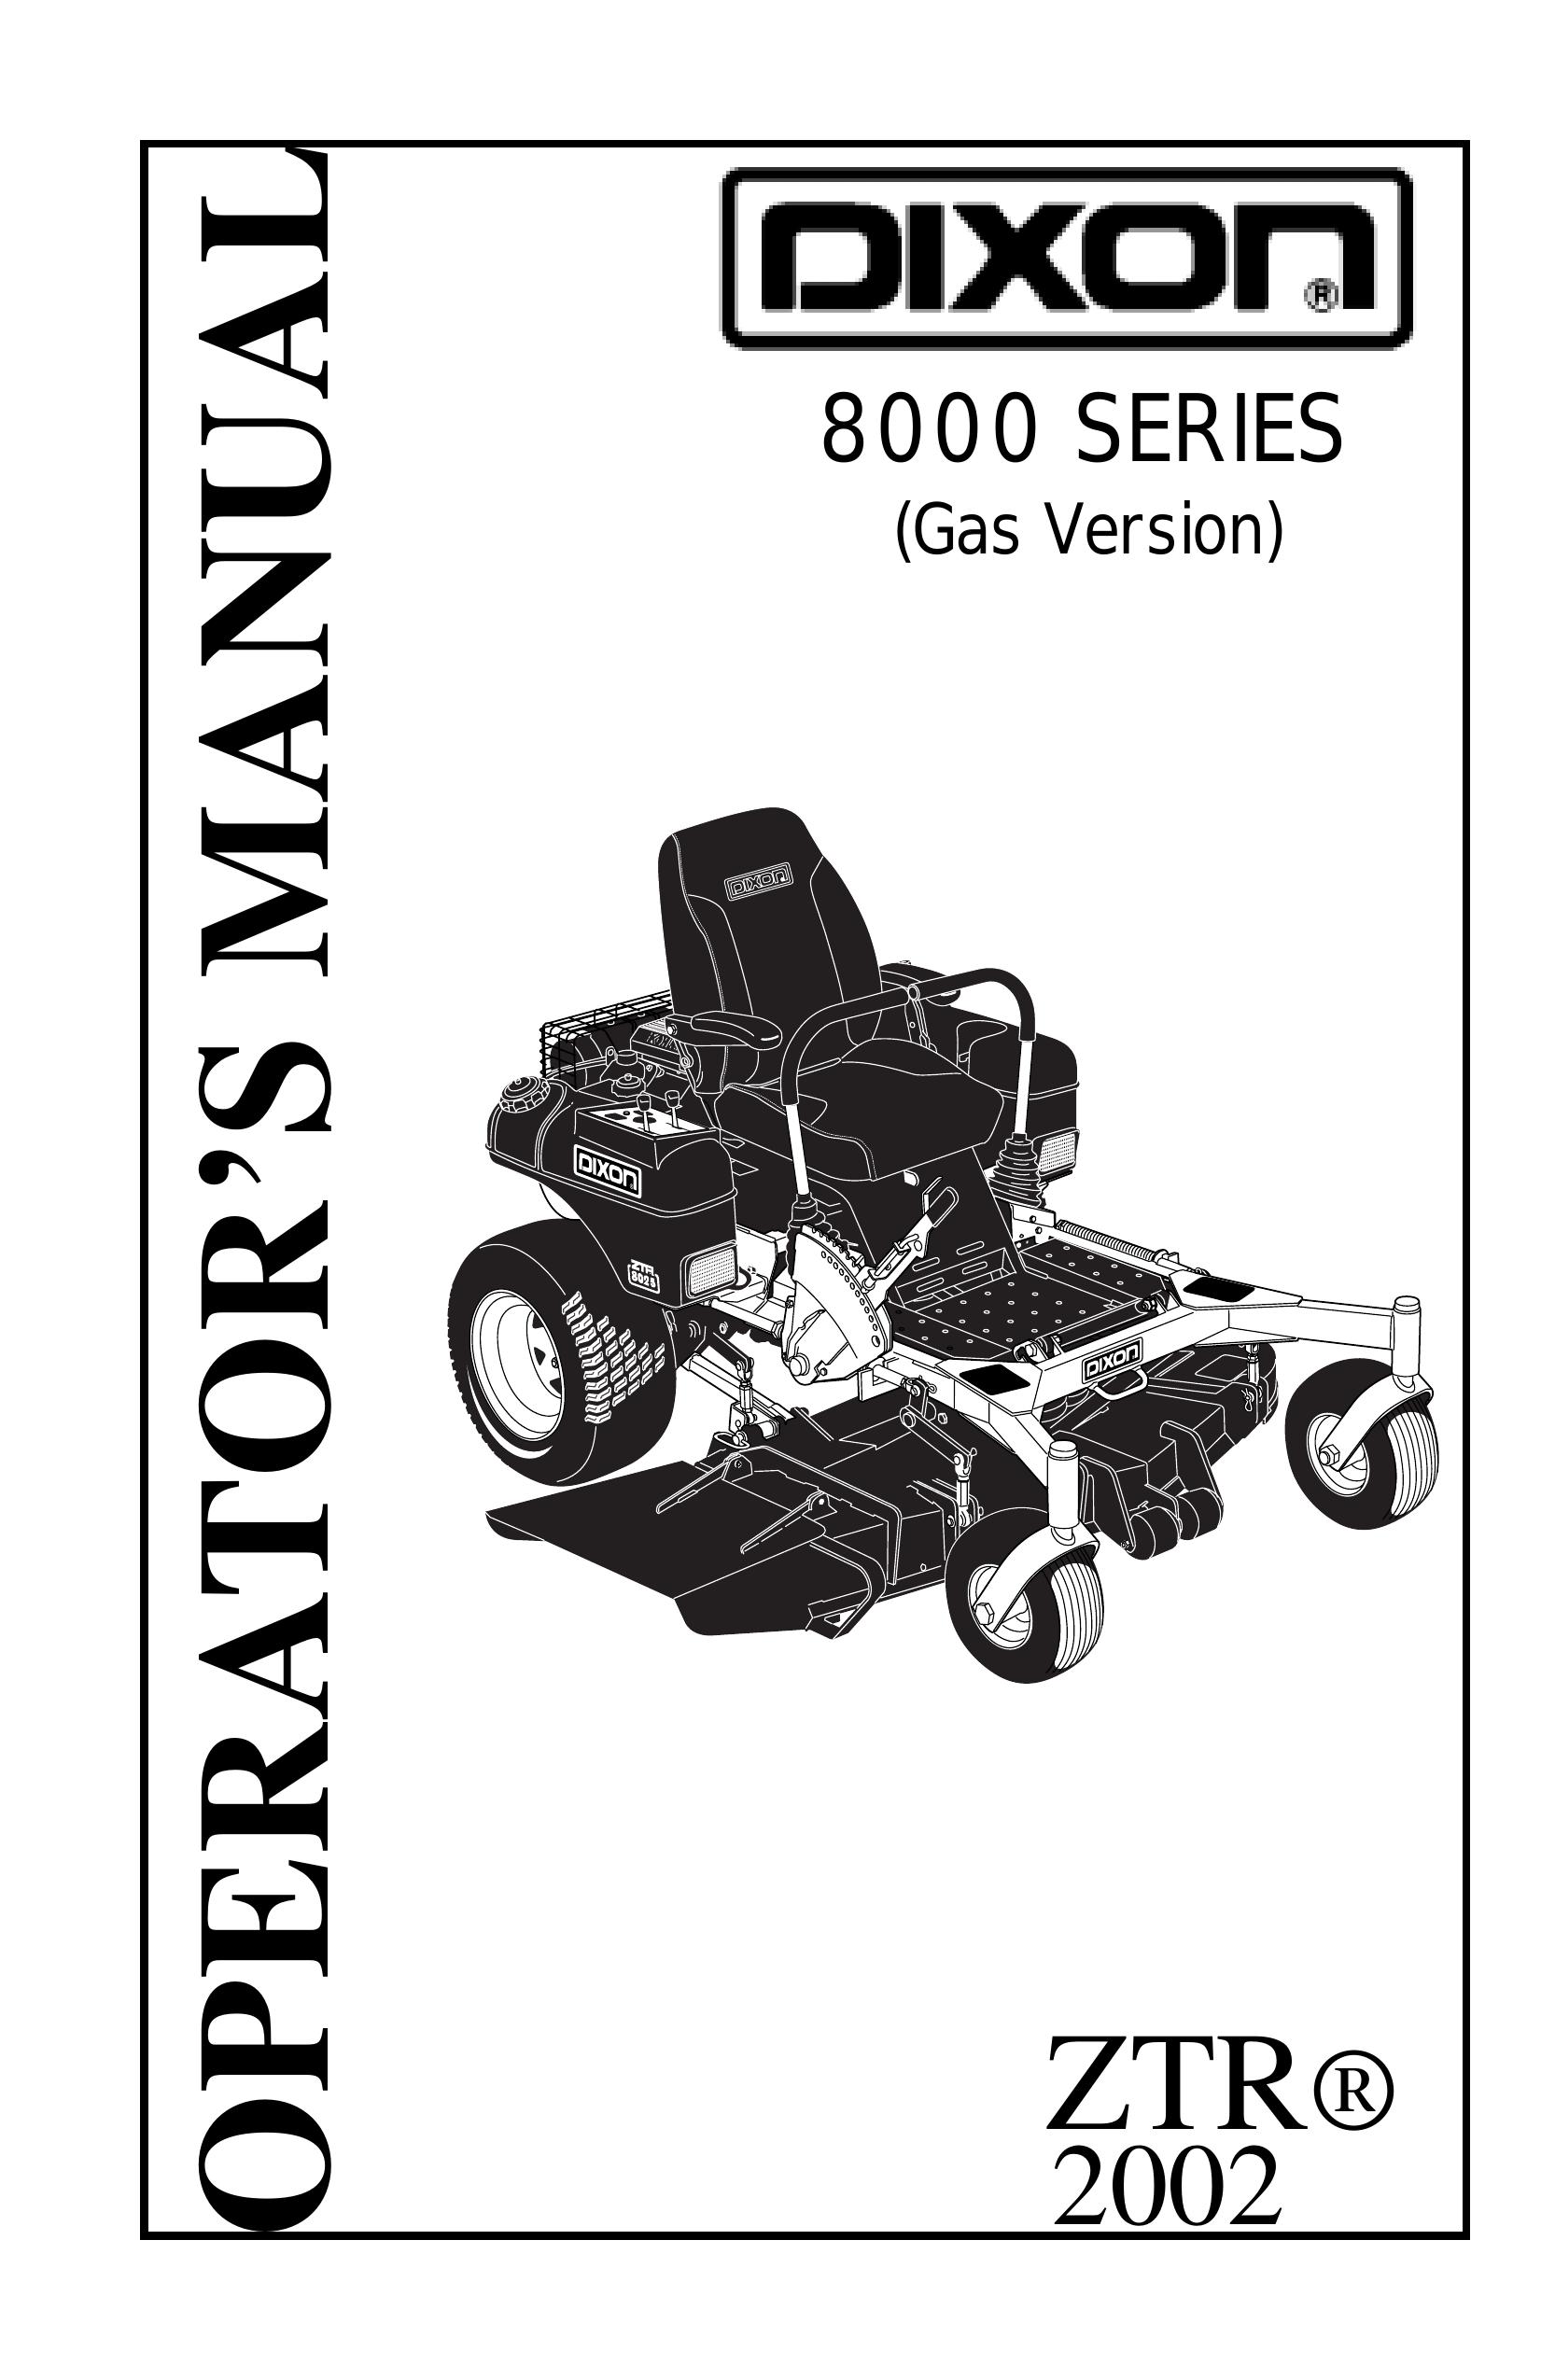 Dixon 13092-0901 Lawn Mower User Manual